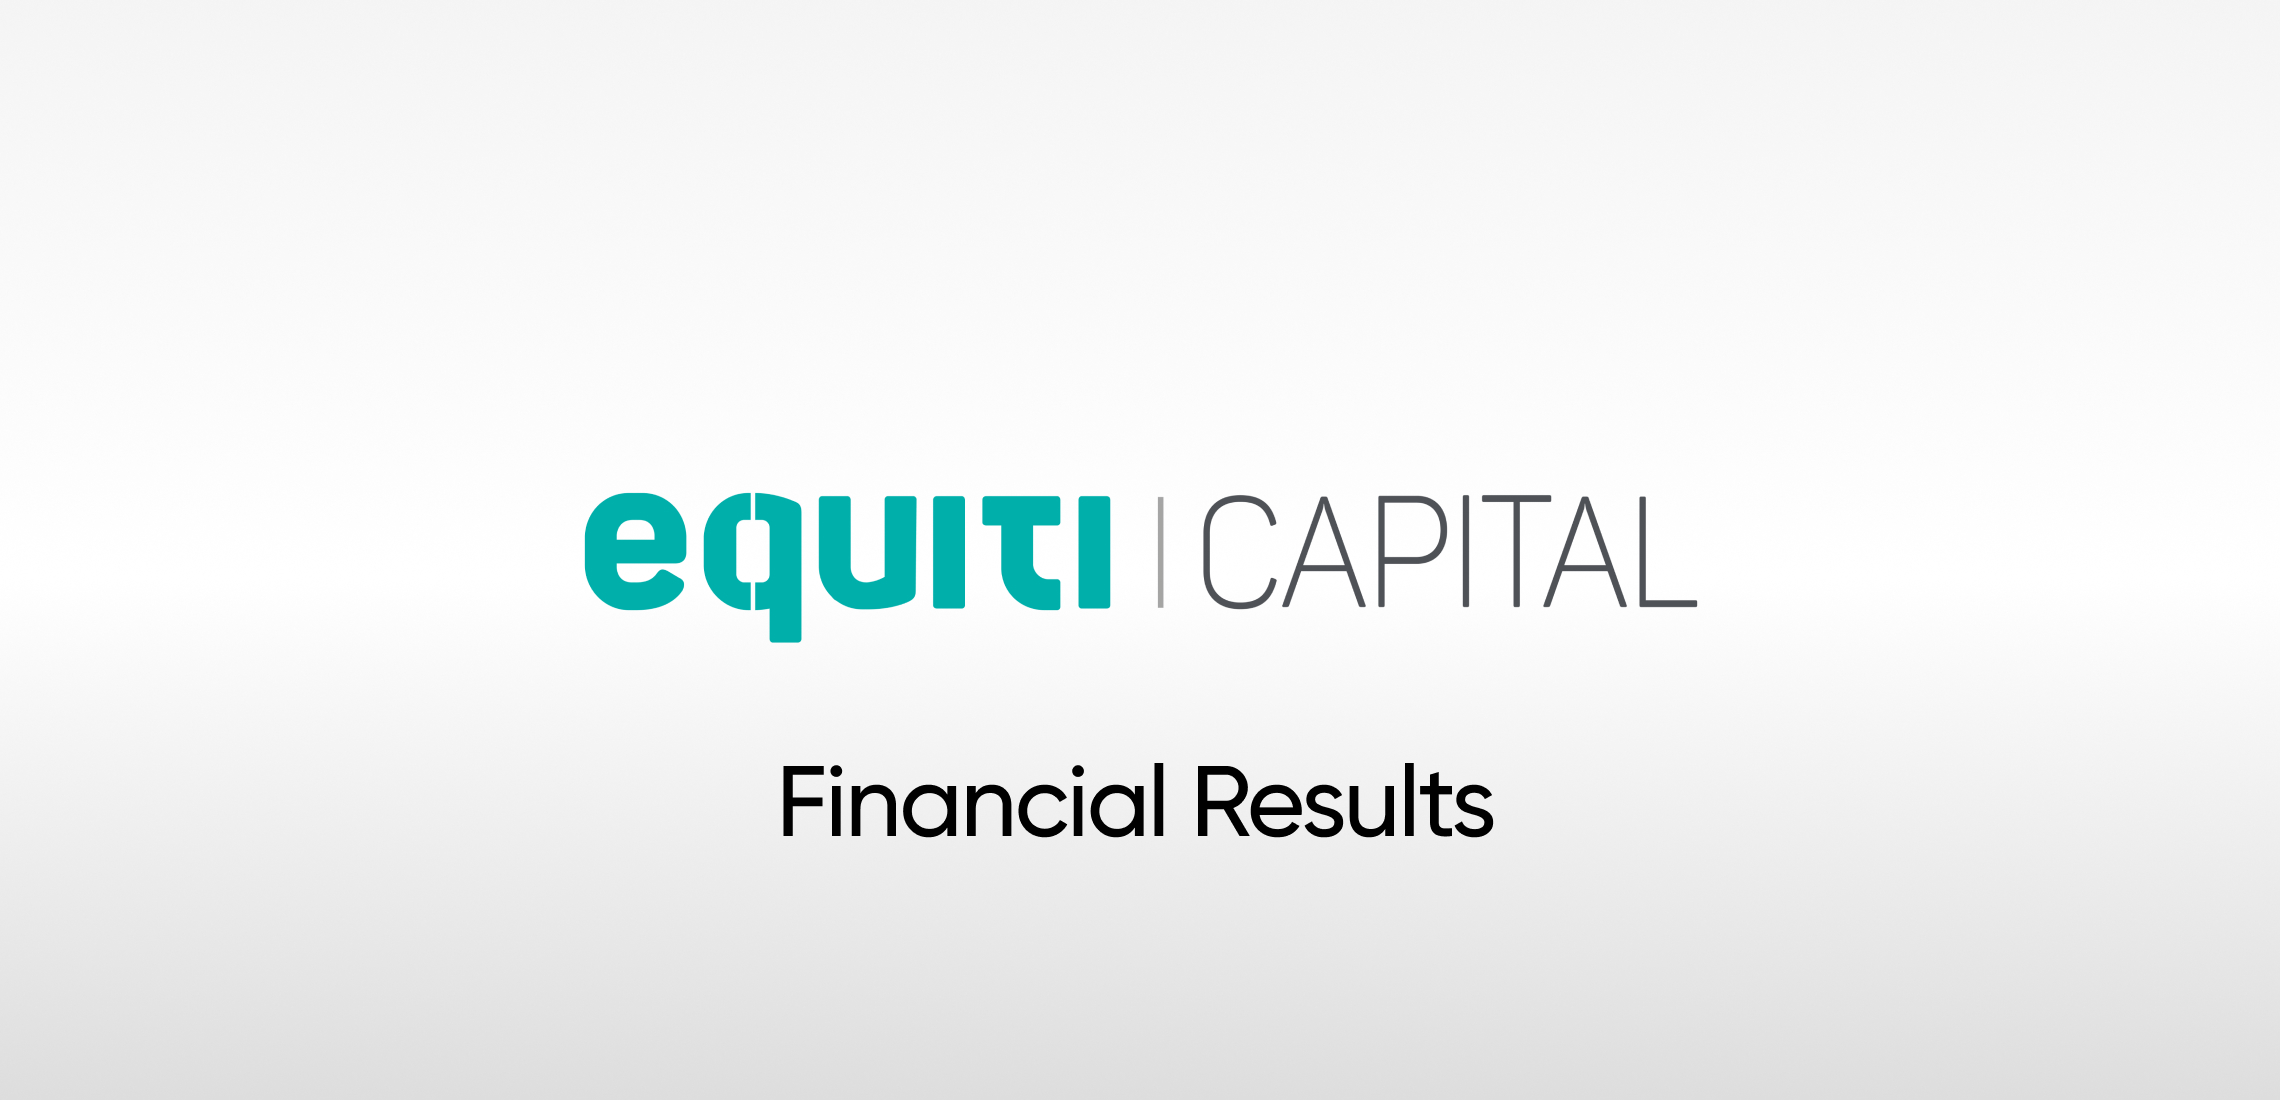 قرار شركة Equity Capital UK بِترقية نائب المدير المالي للمجموعة كمُدير تنفيذي جديد لها